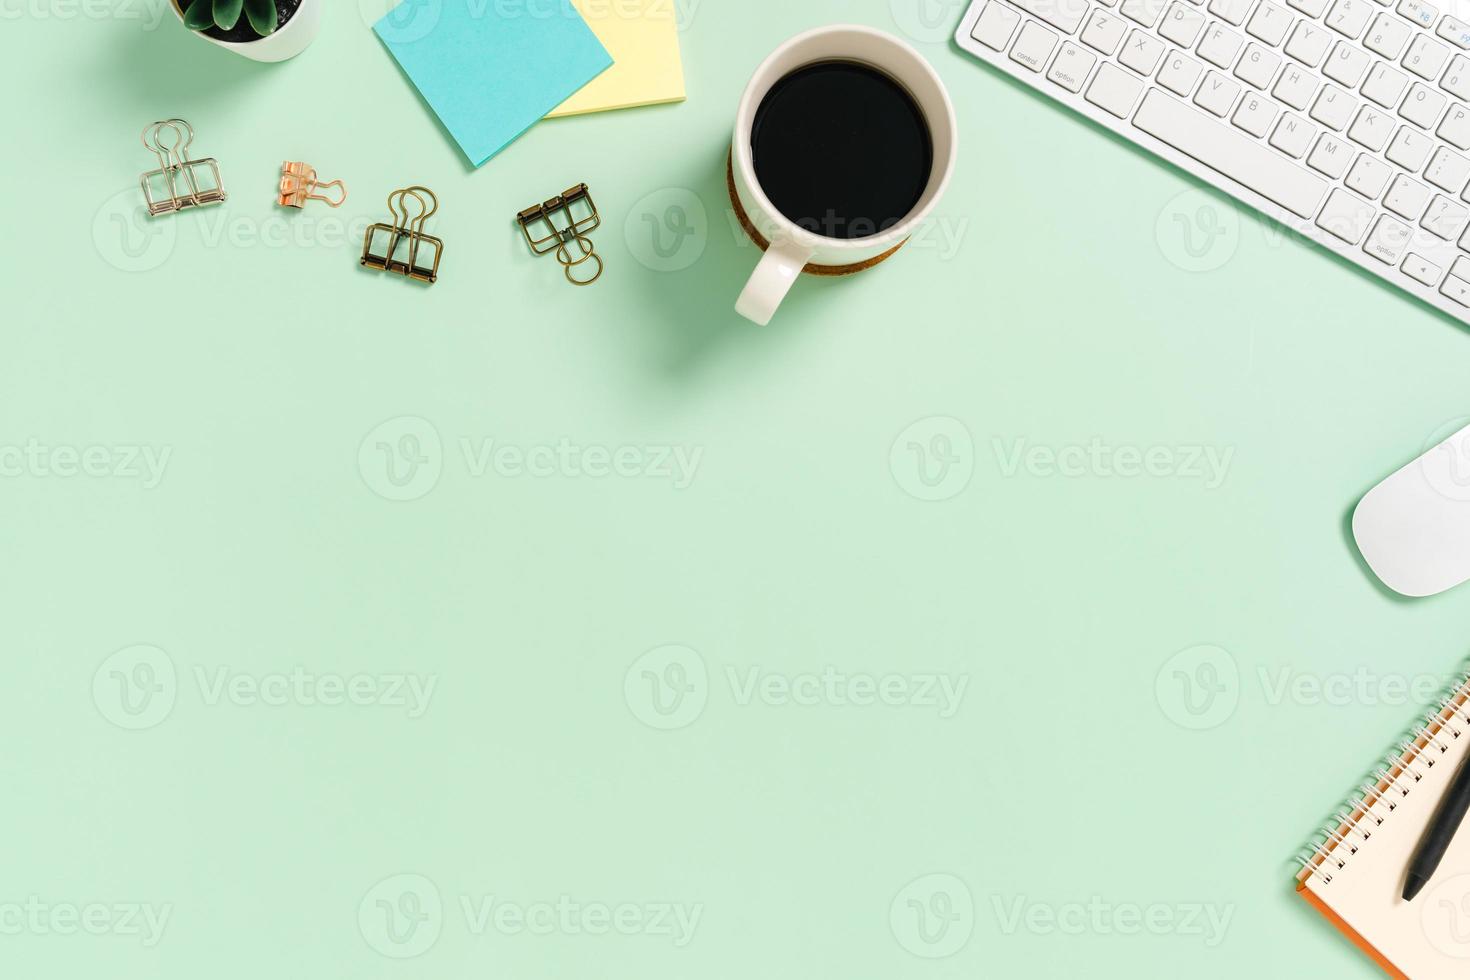 minimaler arbeitsplatz - kreatives flaches foto des arbeitsplatzes. Schreibtisch von oben mit Tastatur und Maus auf pastellgrünem Hintergrund. Draufsicht mit Kopienraum, Flachfotografie.